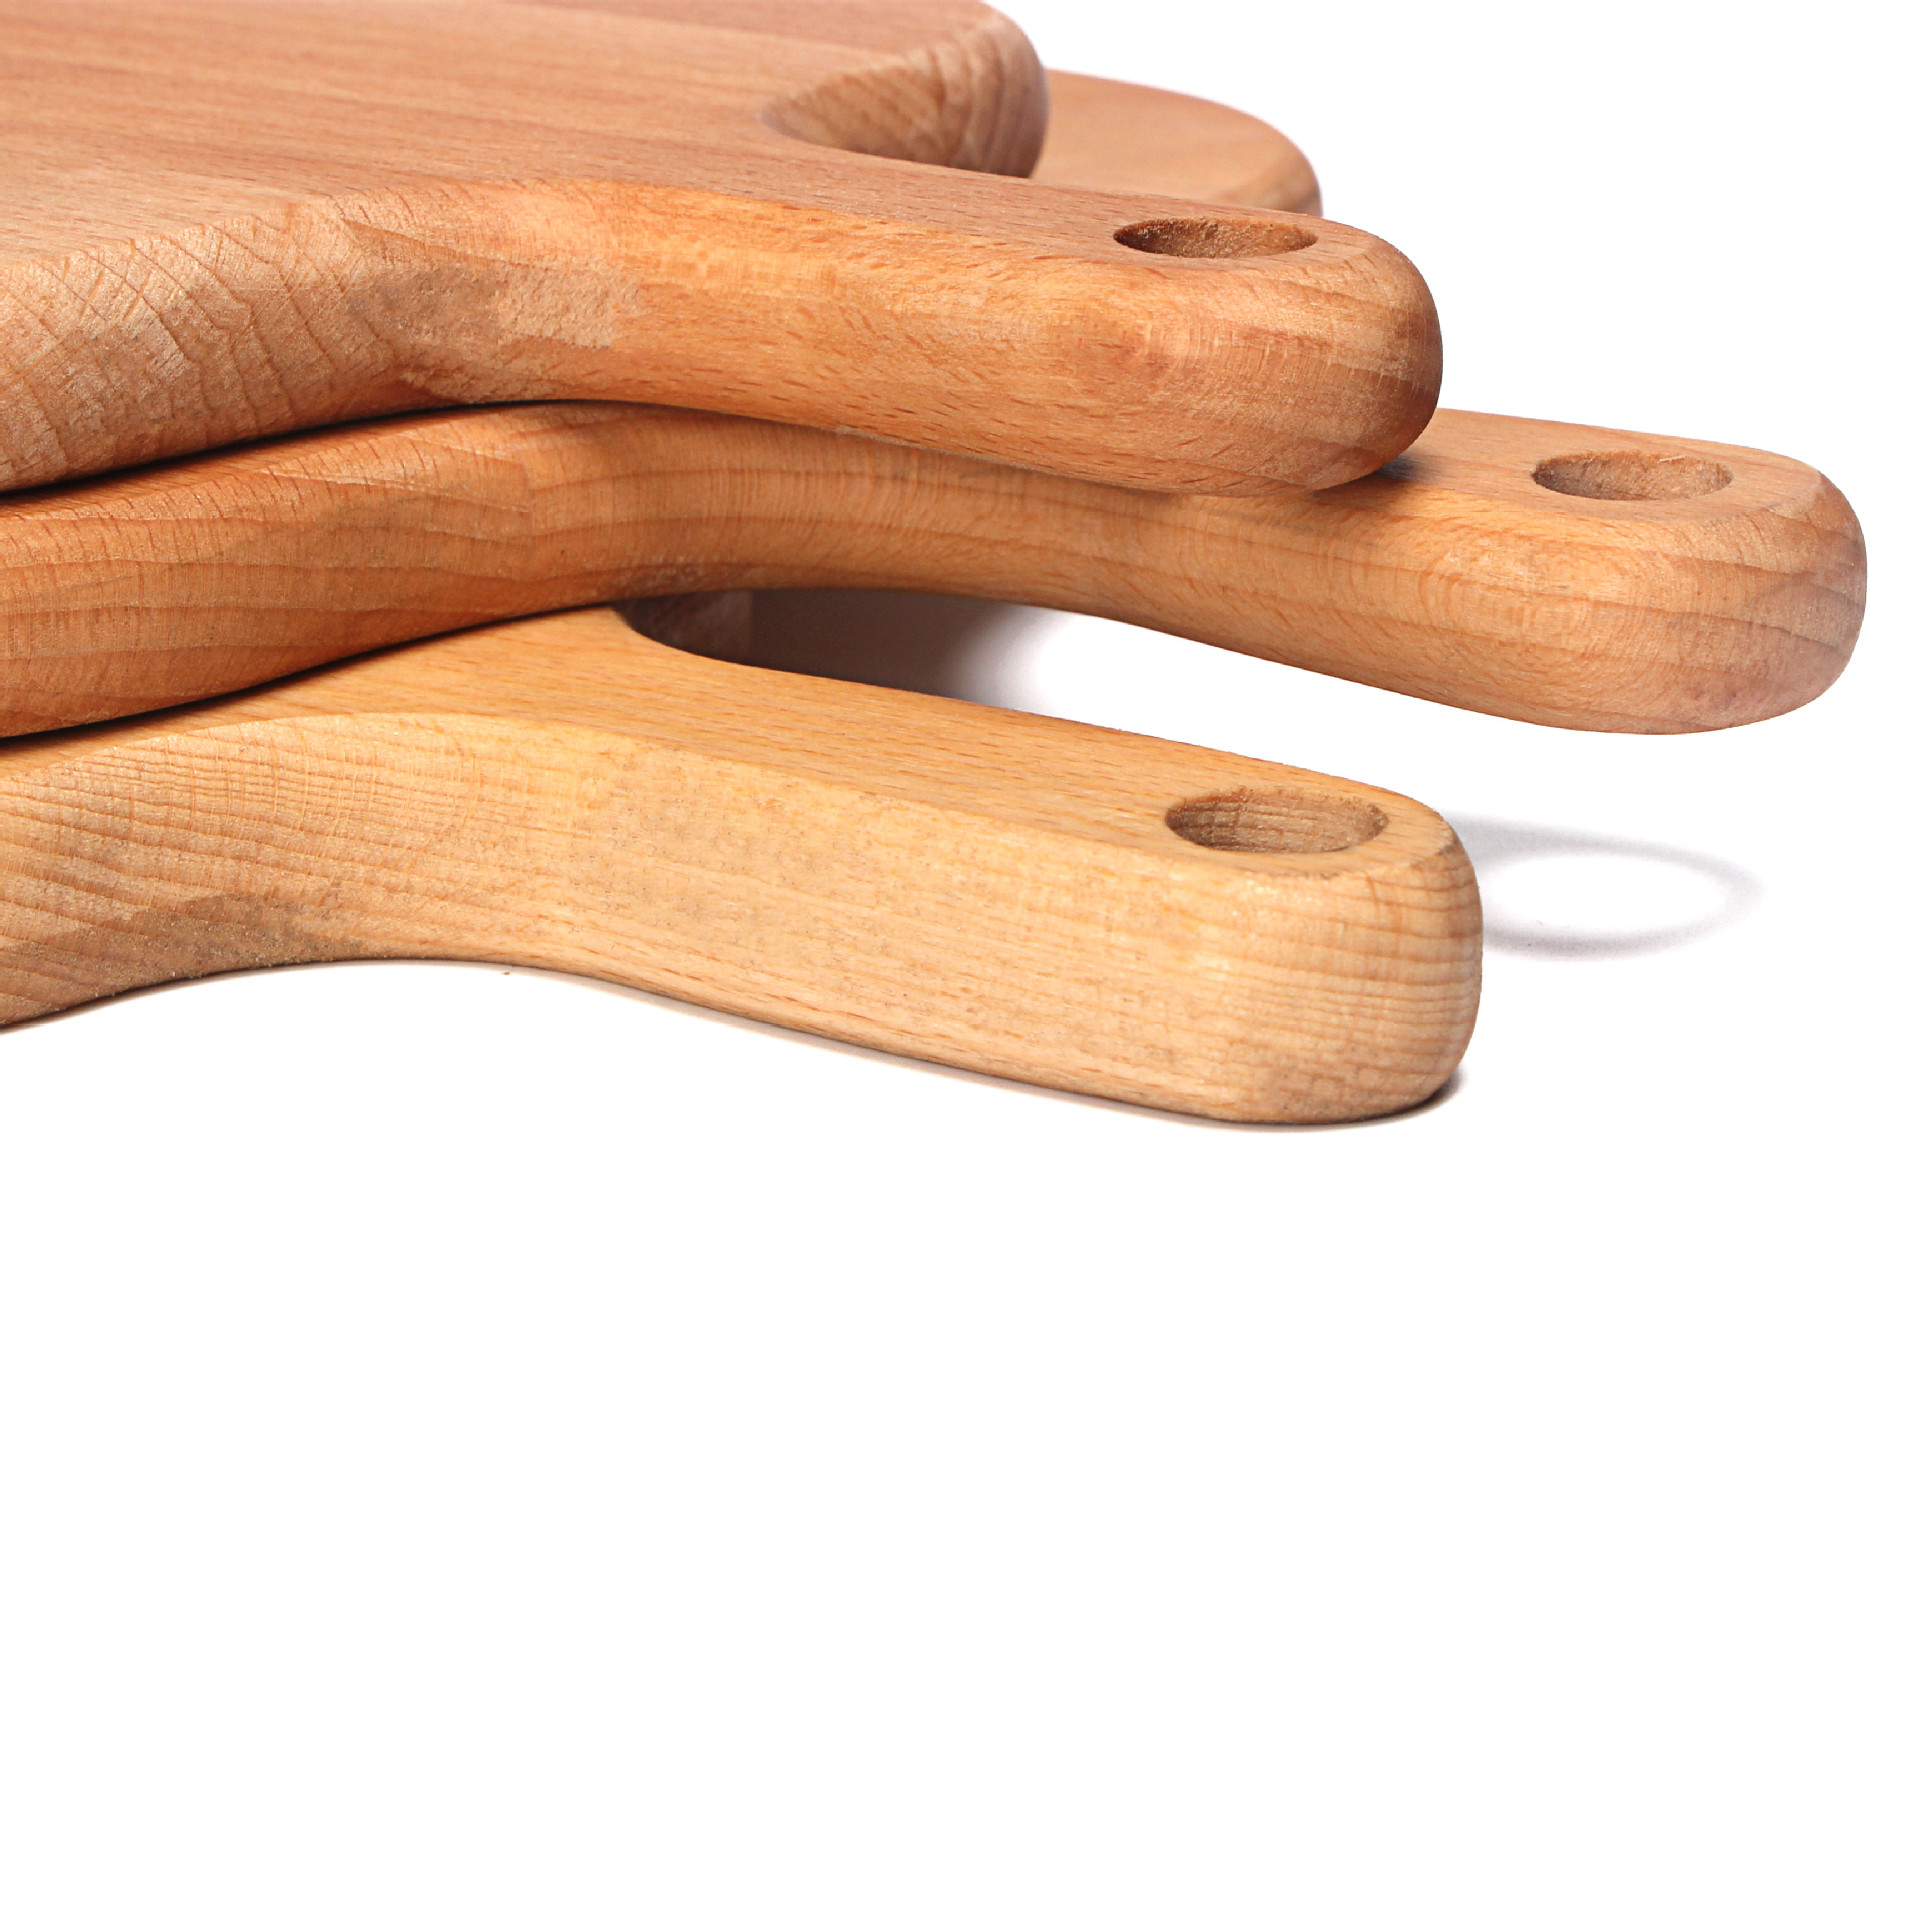 Beech Nordic style bread board cutting vegetables natural wood cutting board cutting board solid wood baking utensils